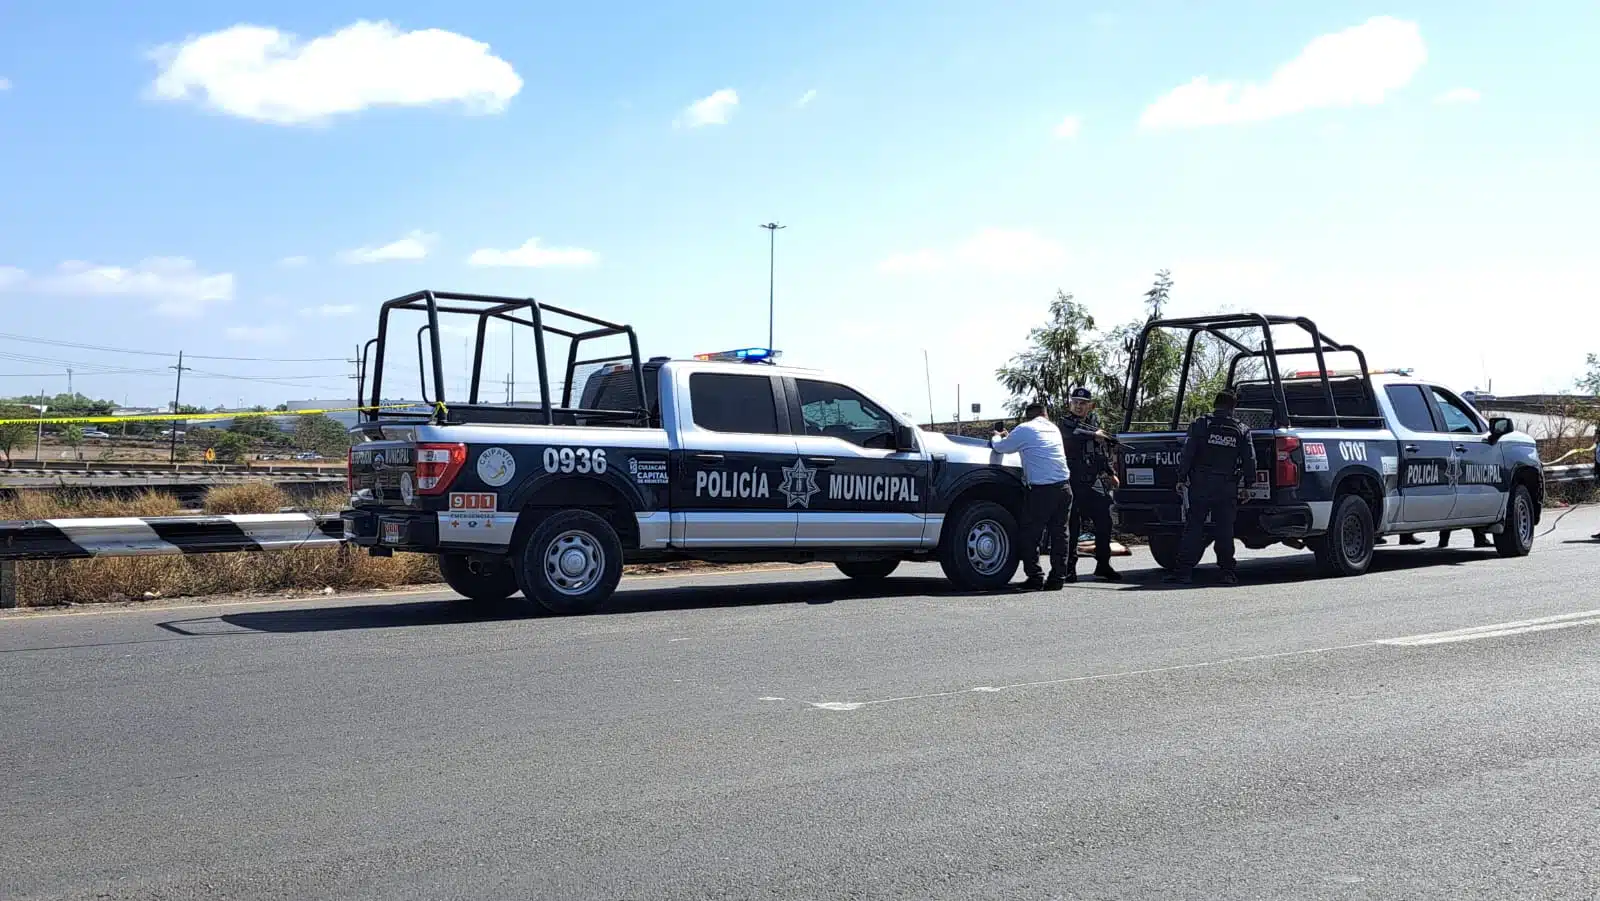 Patrullas de la Policía Municipal de Culiacán en el lugar donde atropellaron a Jesús por la carretera Culiacán-Eldorado